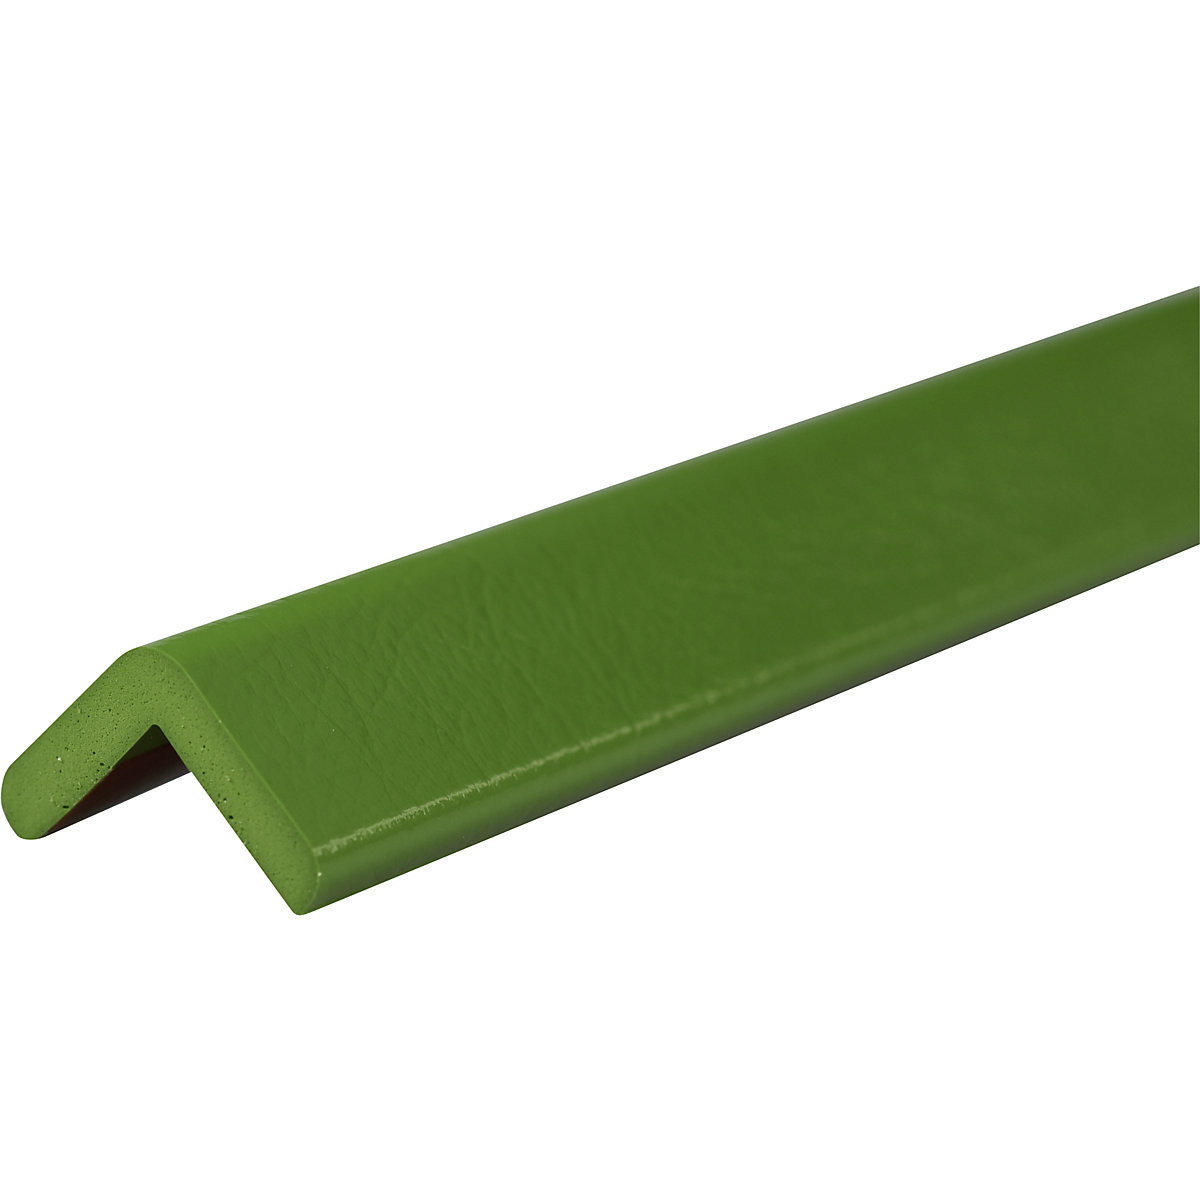 Proteção de cantos Knuffi® – SHG, tipo H, unidade de 1 m, verde-26